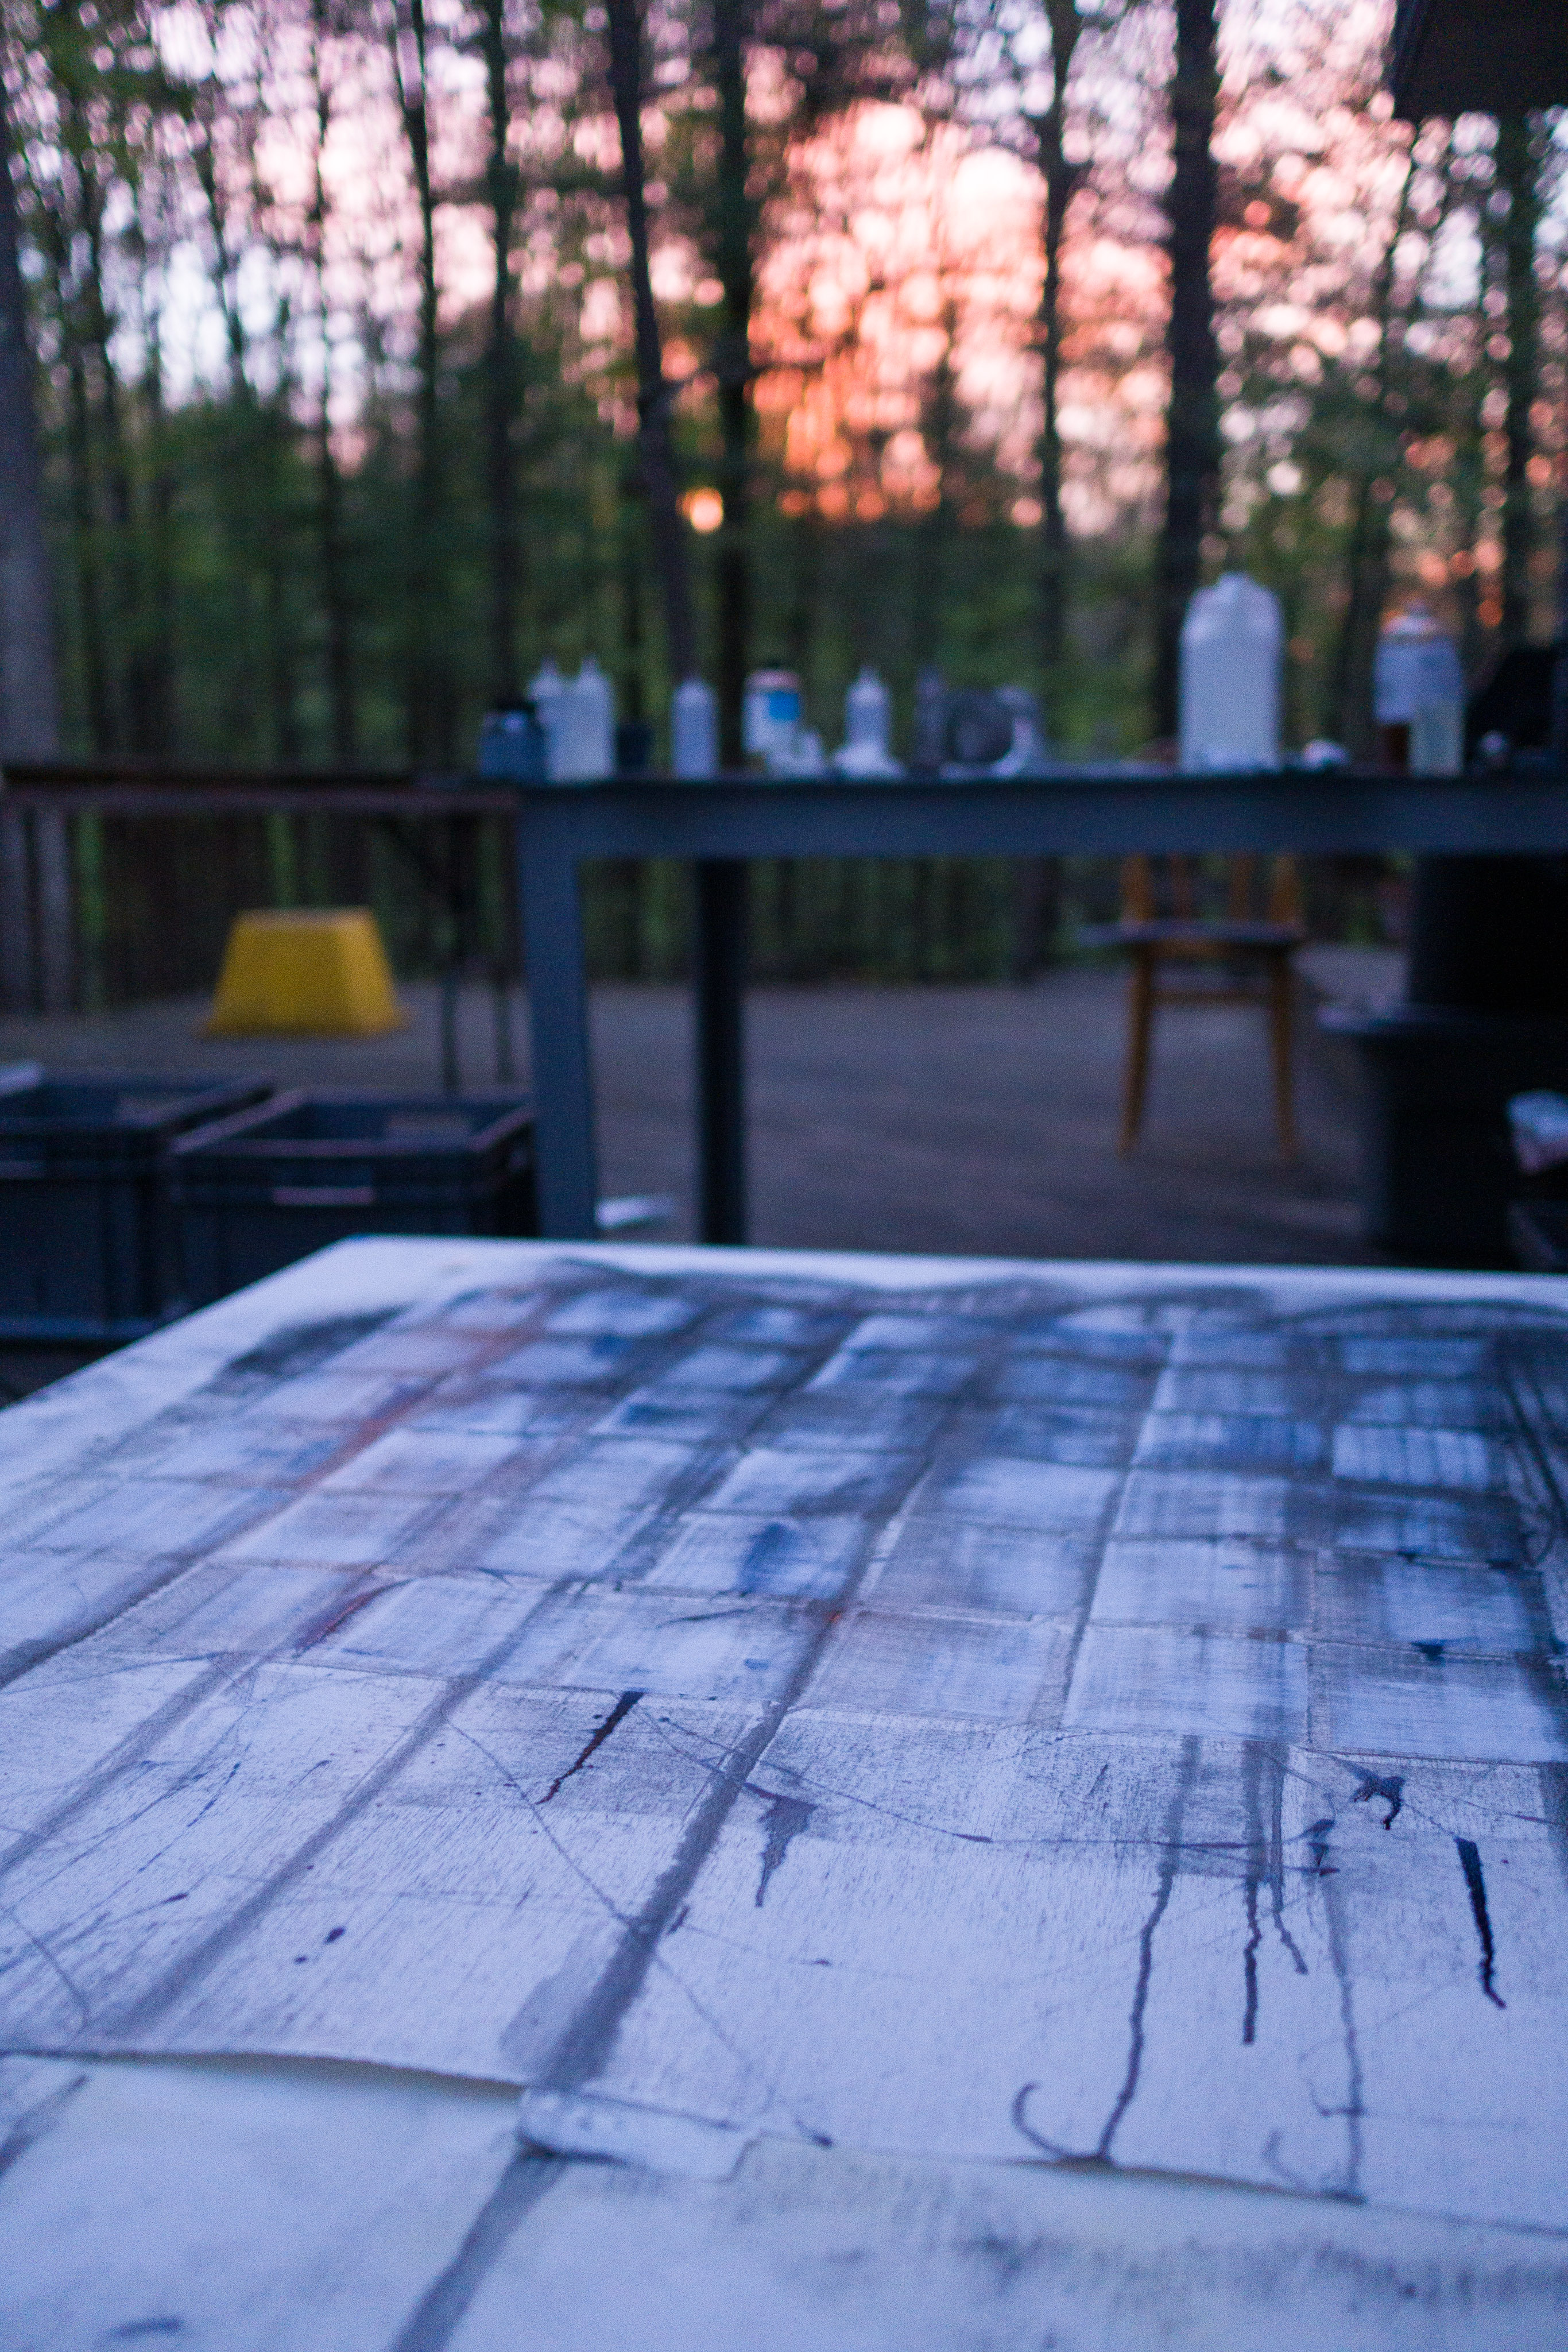 Outdoor studio, sunset on Gatesburg Ridge.